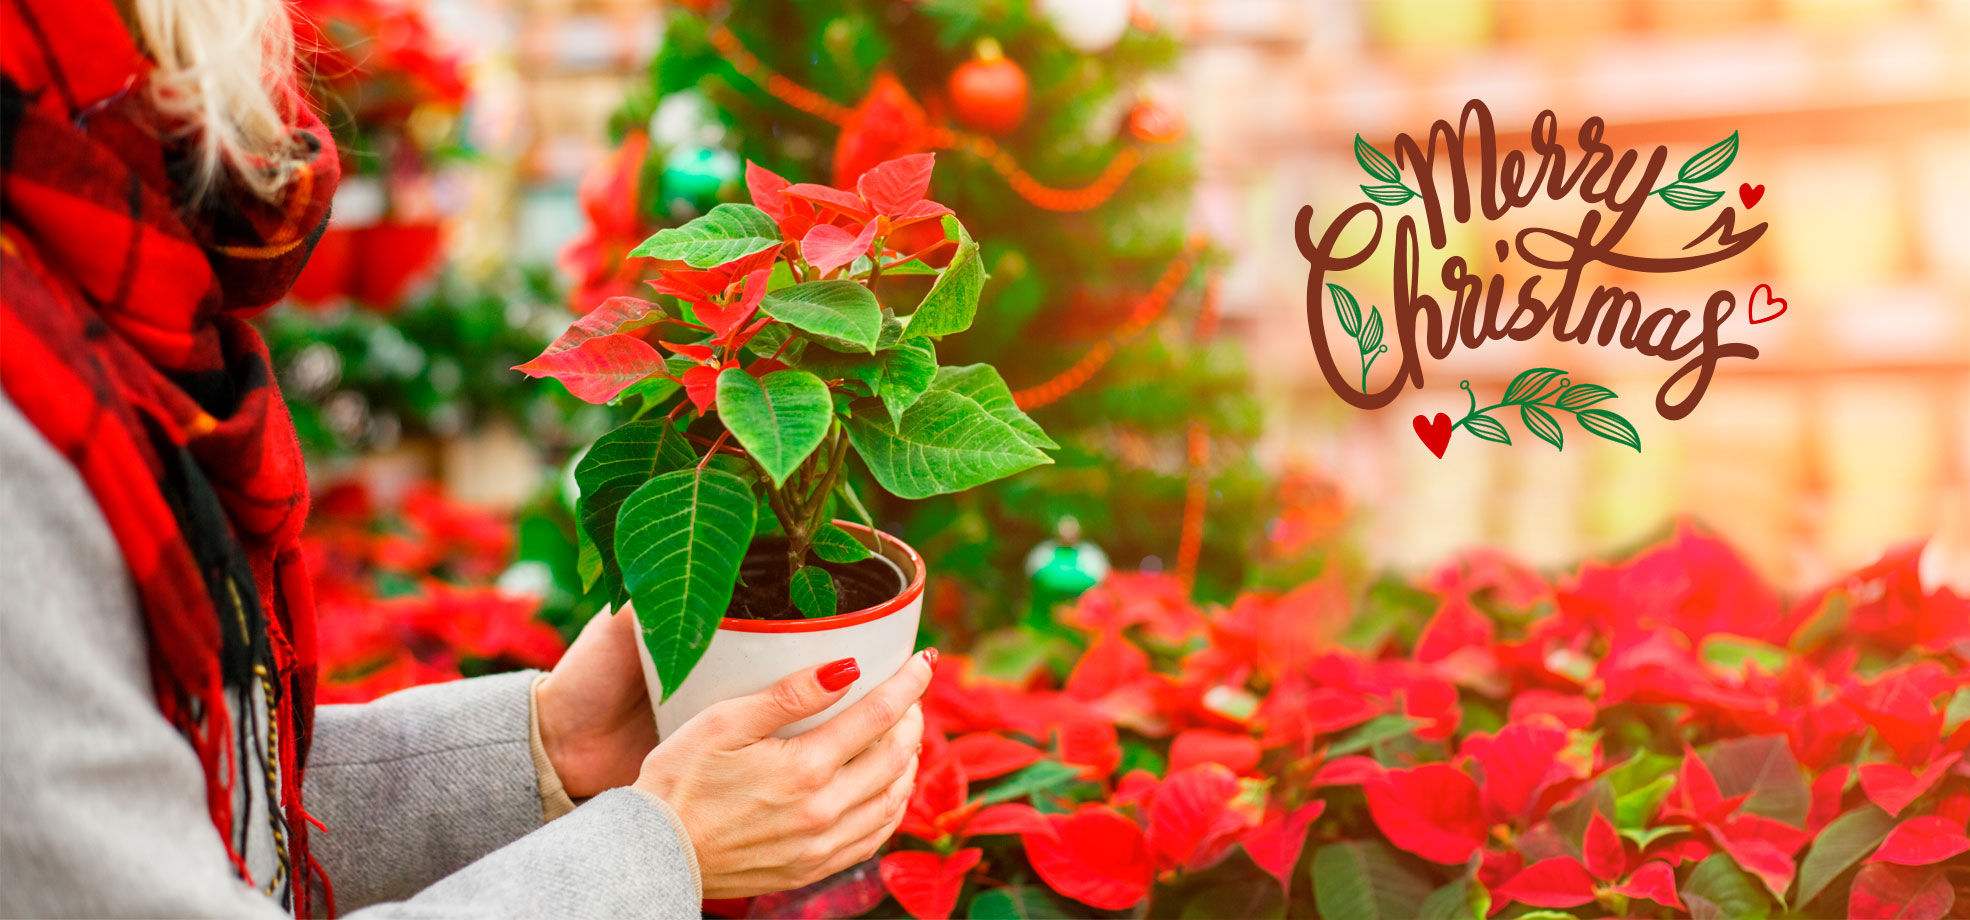 Viveros Shangai, Vivero de Flores y Plantas en Madrid les desea Feliz Navidad